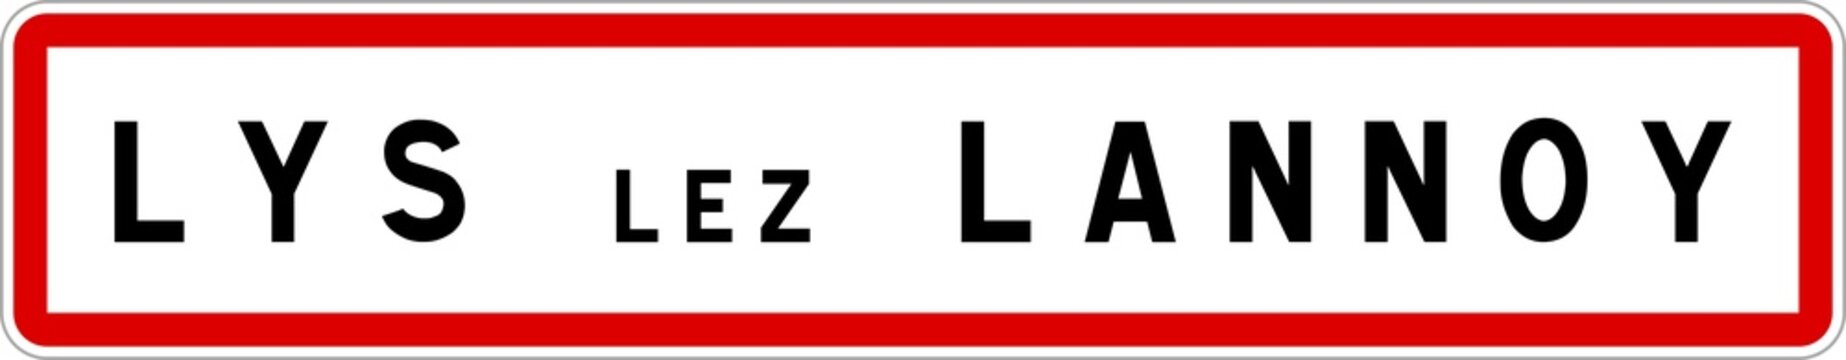 Panneau entrée ville agglomération Lys-lez-Lannoy / Town entrance sign Lys-lez-Lannoy